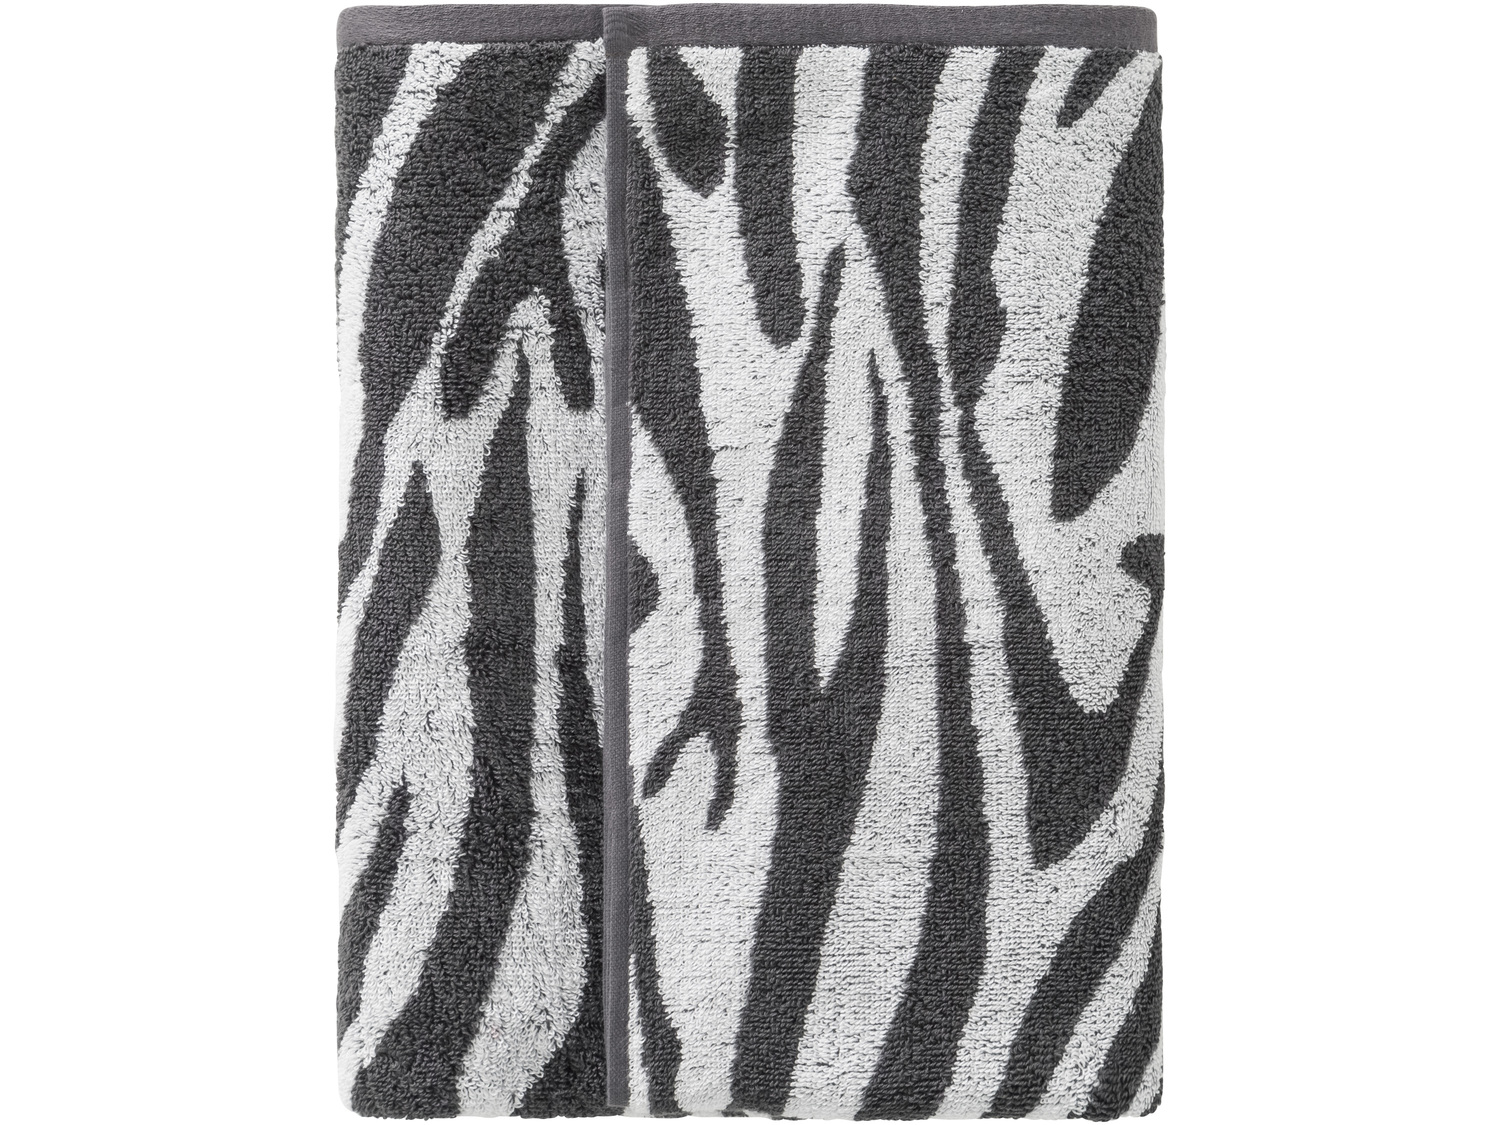 Ręcznik frotté 70 x 140 cm Miomare, cena 24,99 PLN 
- modny, zwierzęcy motyw
- ...